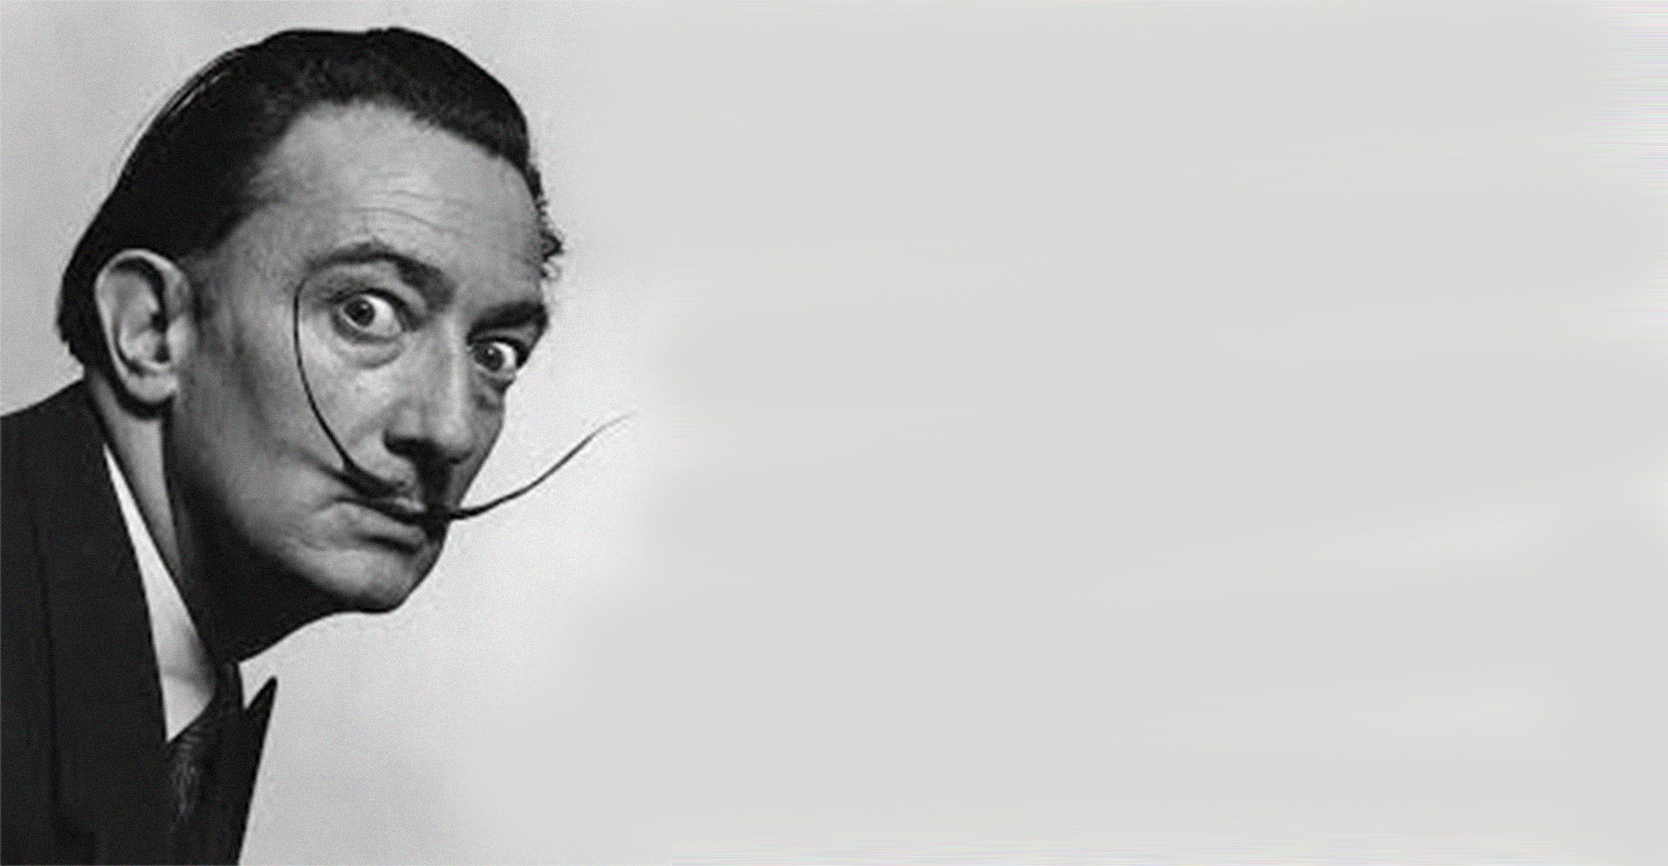 Grabados de Salvador Dalí en Paraguay - PynandiRock